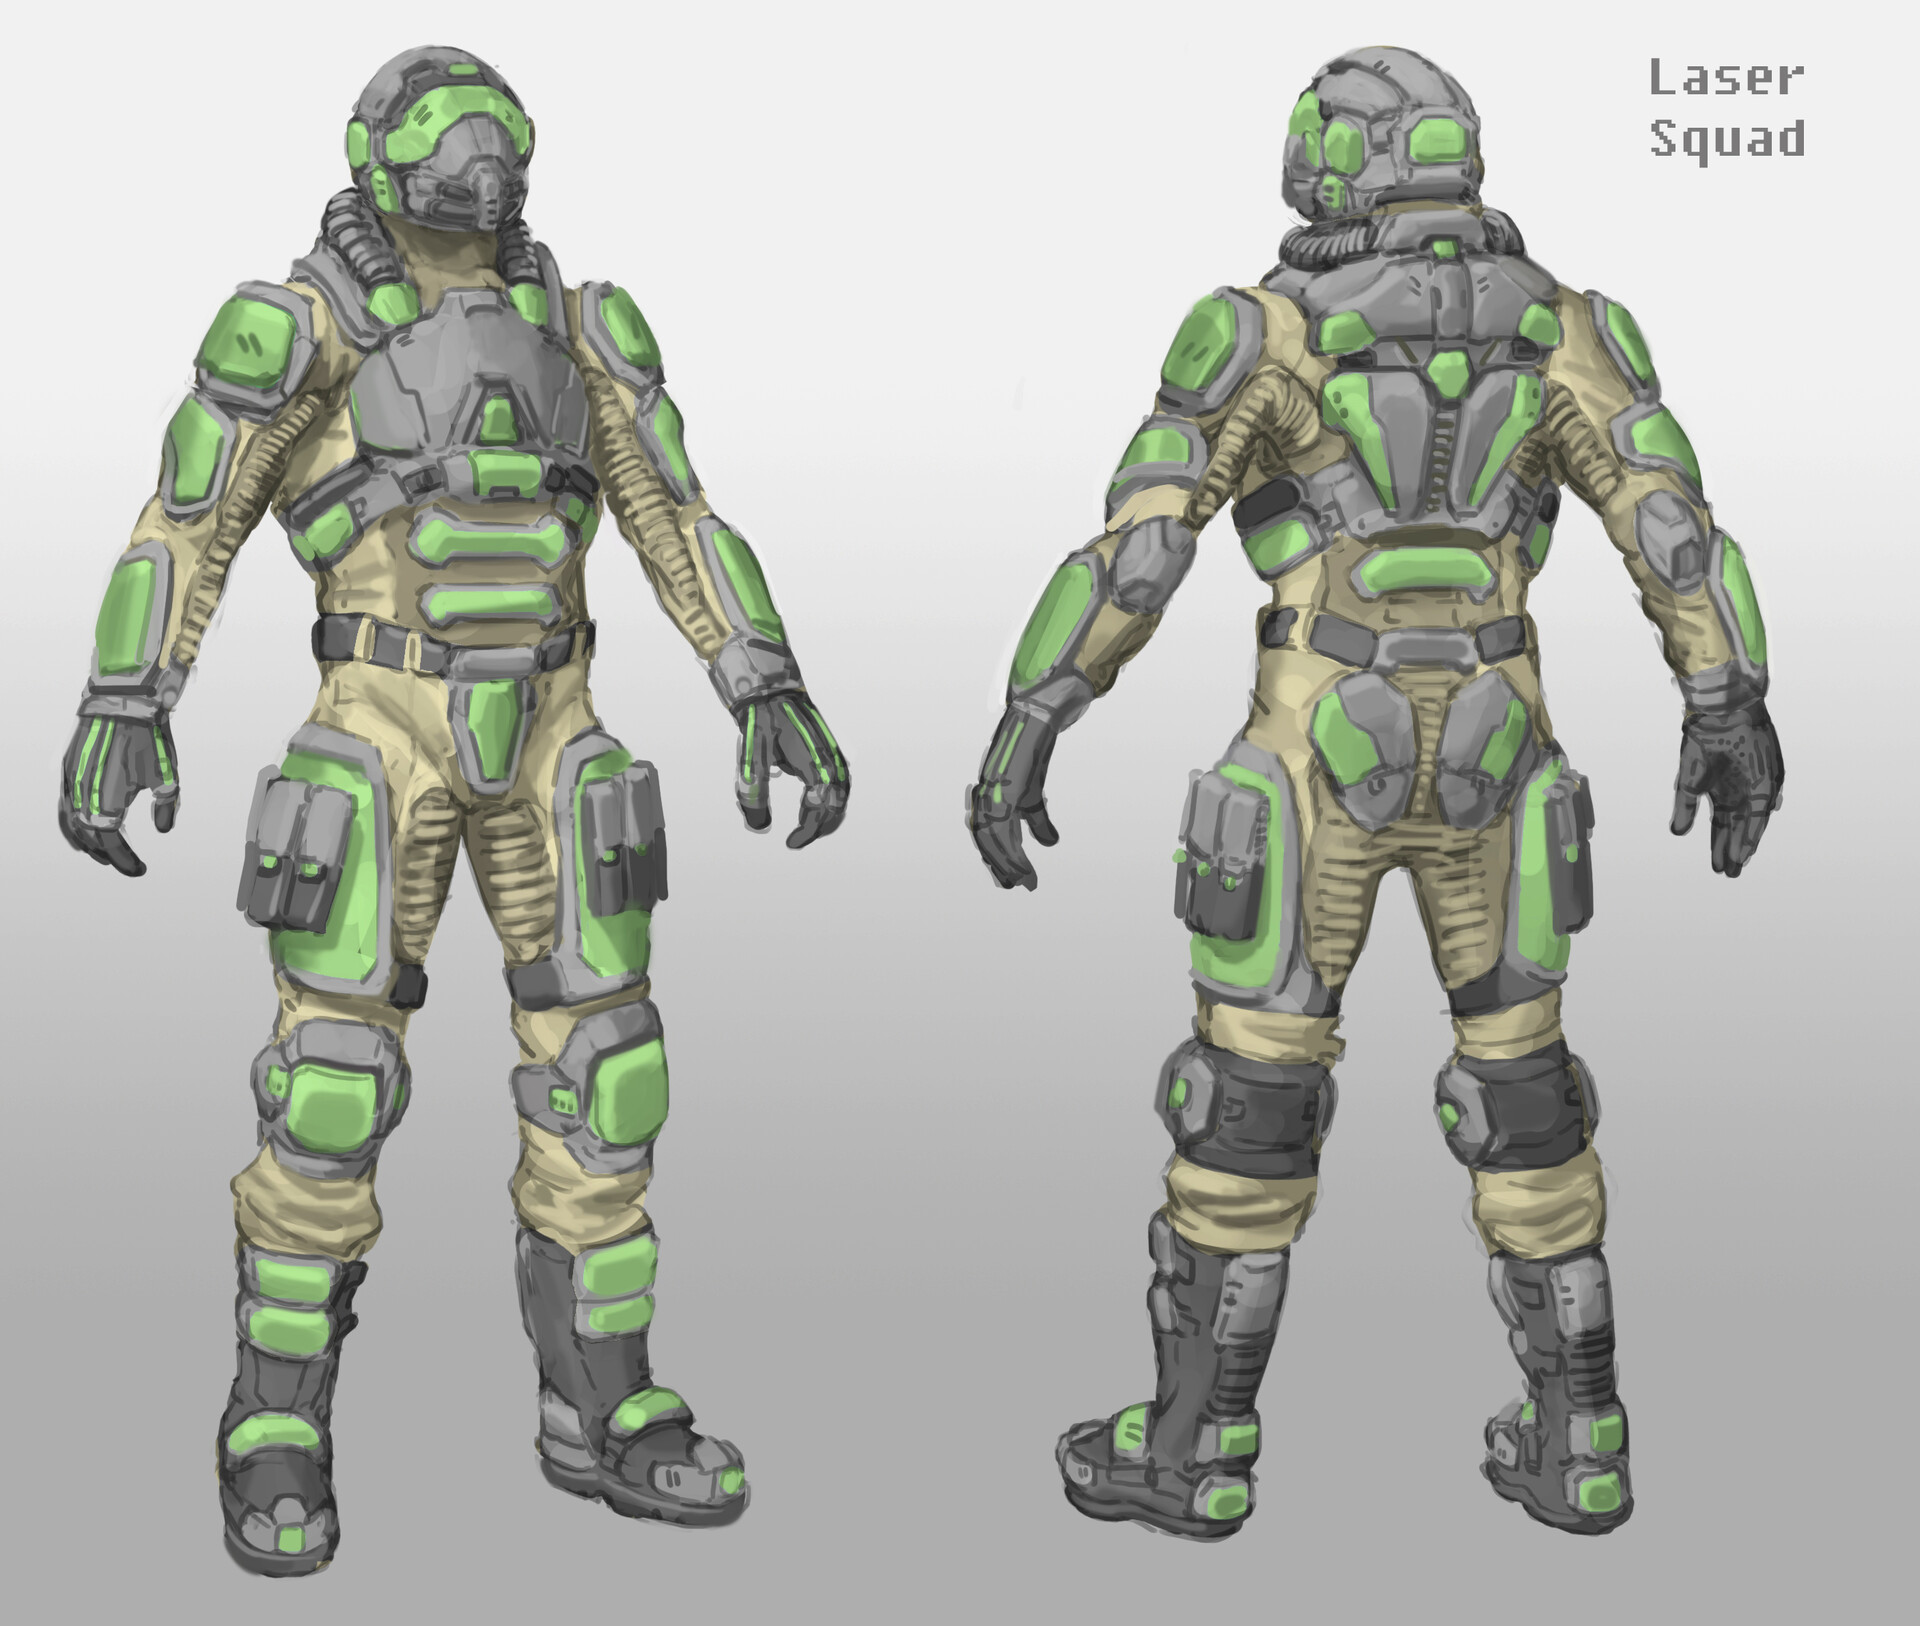 ArtStation - Armor Design 4 - Laser Theme